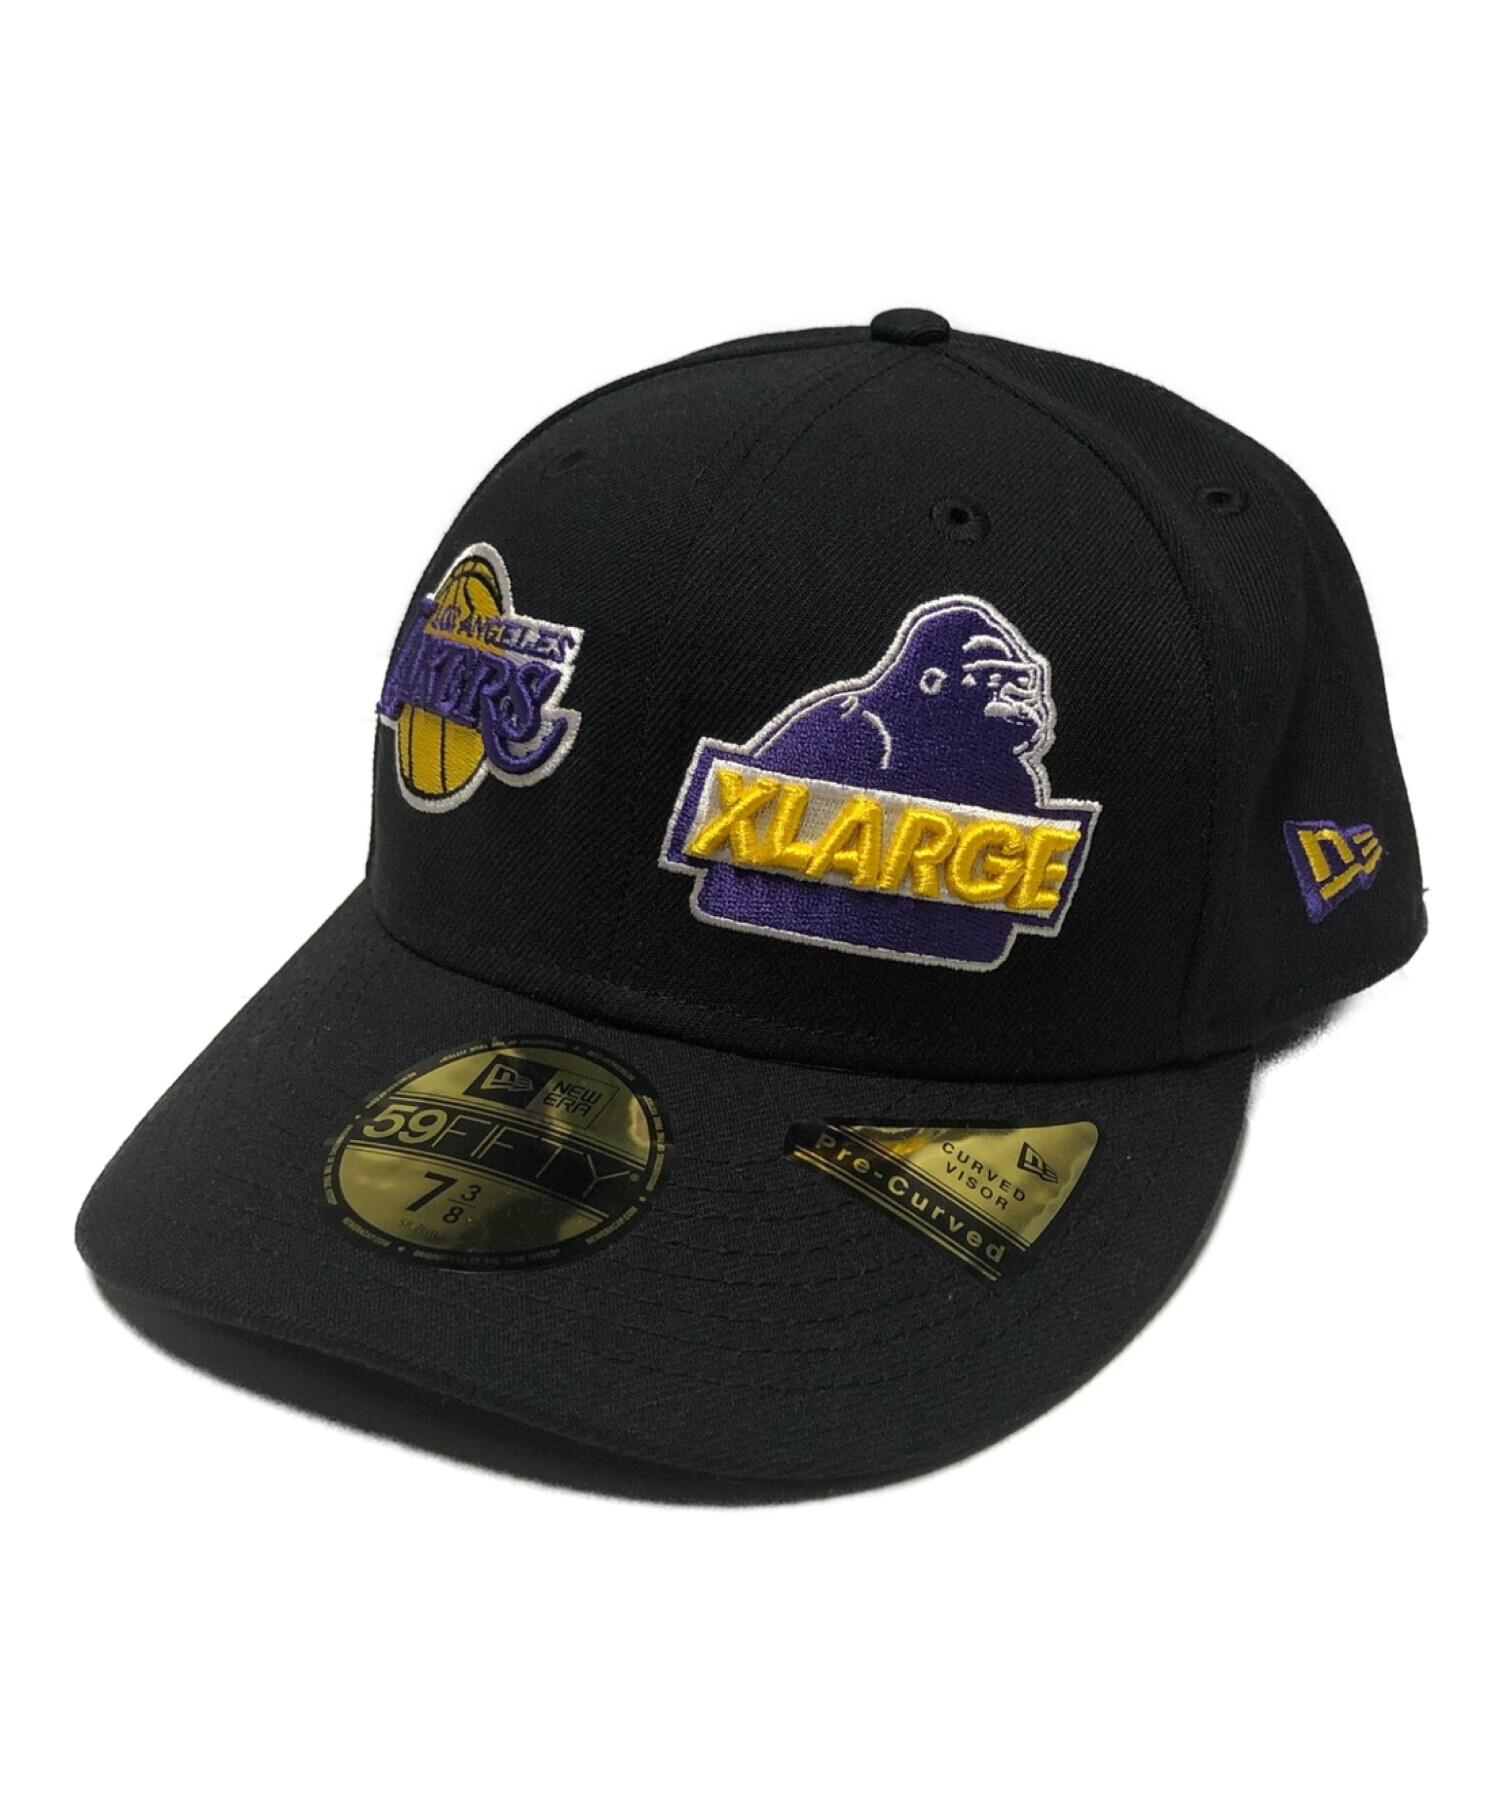 XLARGE (エクストララージ) New Era (ニューエラ) NBA (エヌビーエー) LAKERS STANDARD LOGO  SNAPBACK CAP ブラック サイズ:7 3/8